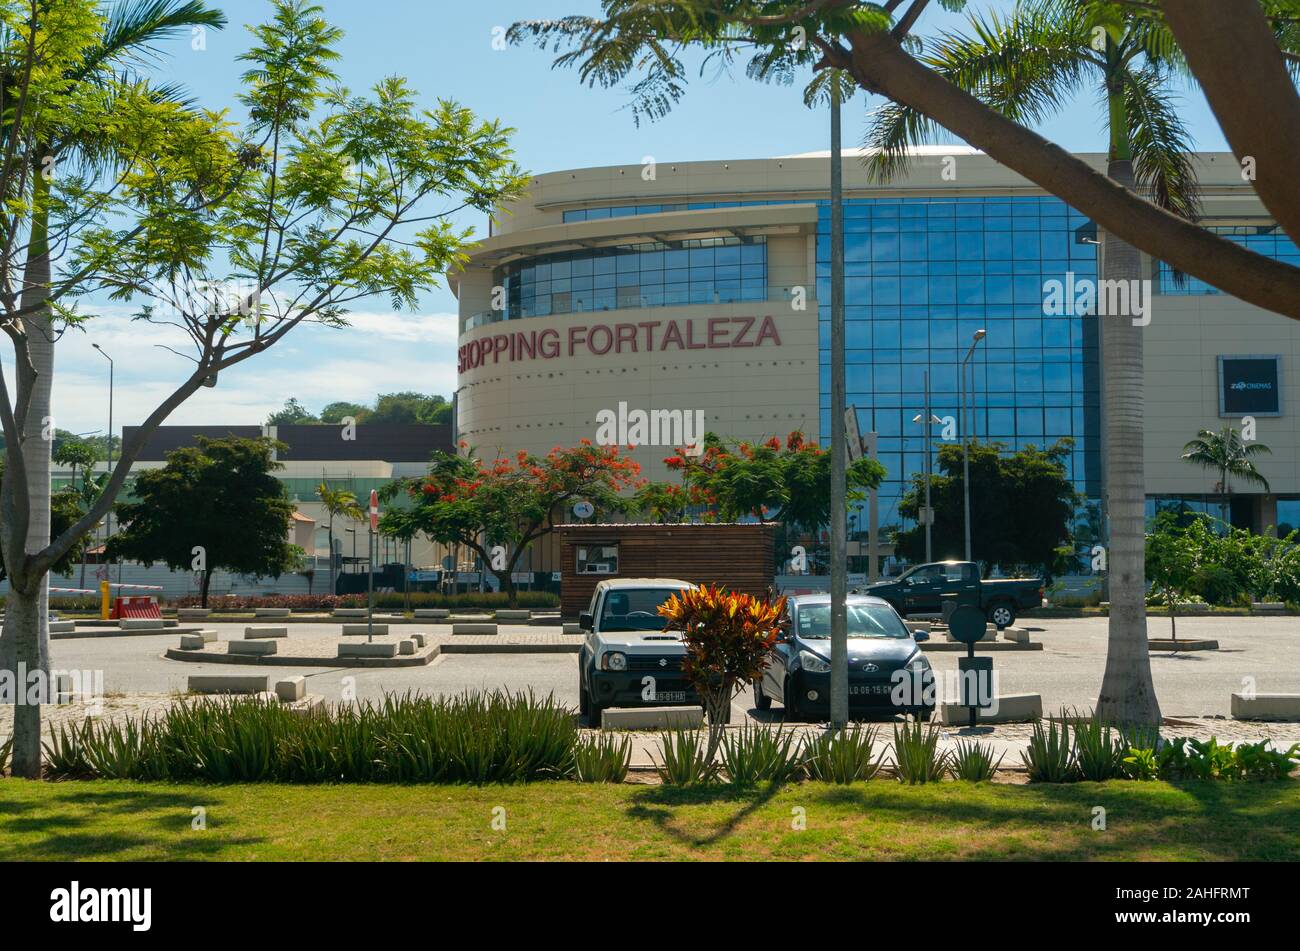 Luanda, angolanische Region - 15. Dezember 2019: Blick auf das neue Einkaufszentrum Fortaleza in Luanda. Redaktionelle Illustration Stockfoto